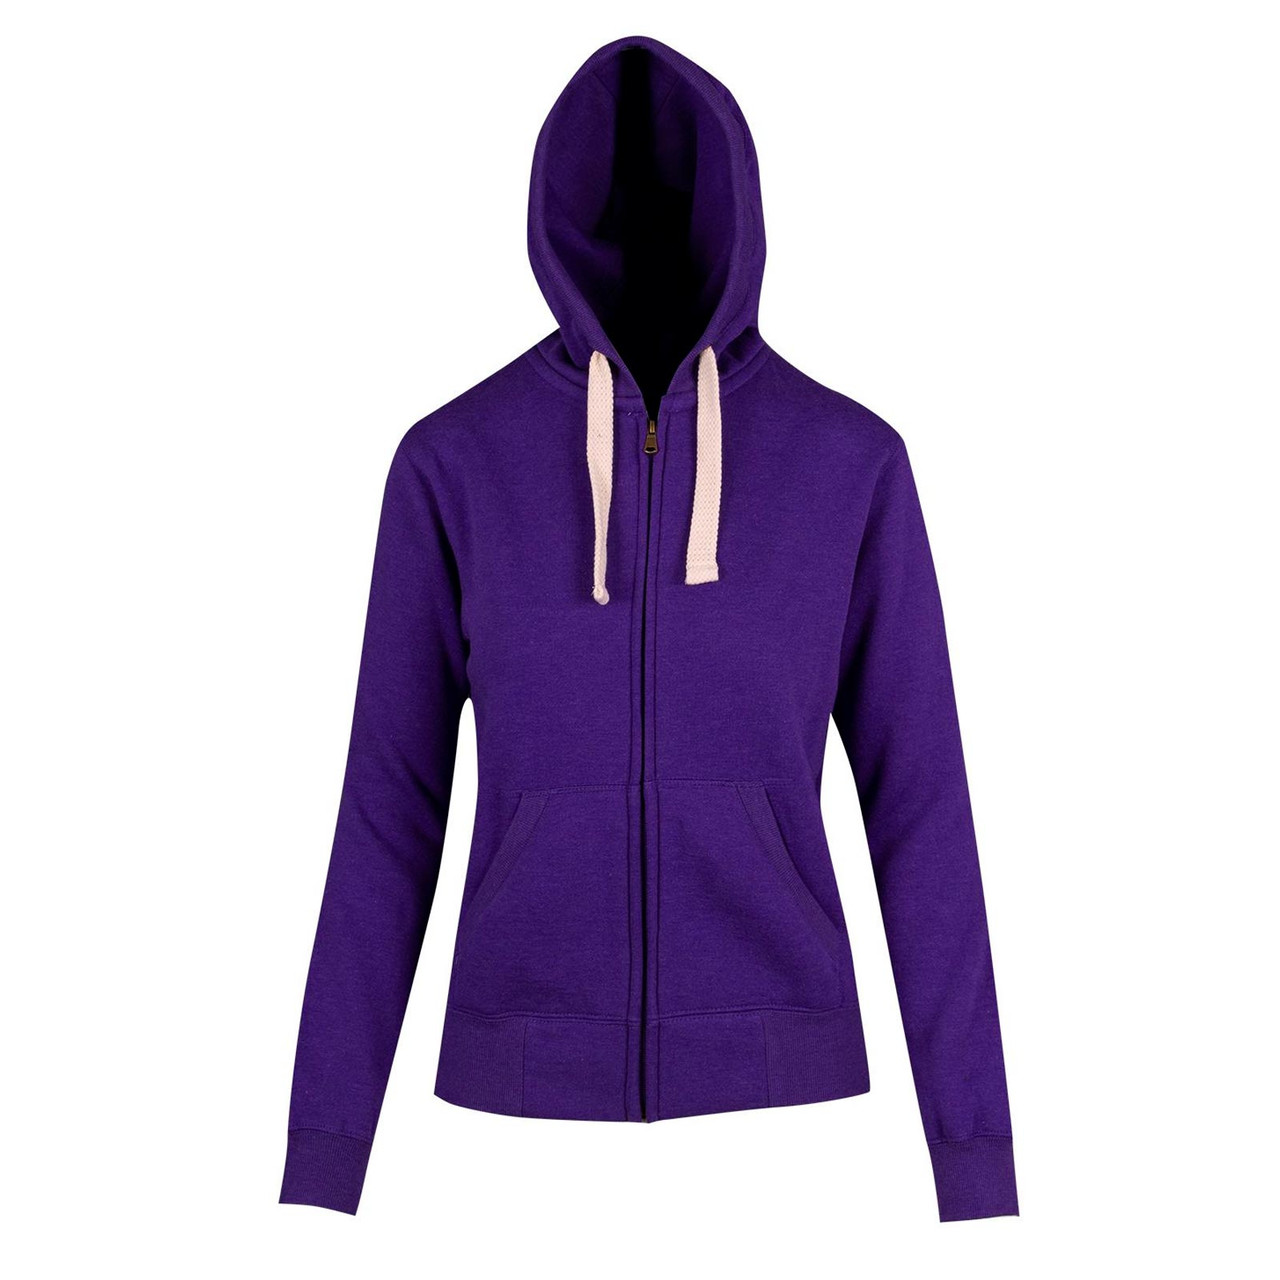 Grape-Purple-Marl-Buy-Ladies-heavy-fleecy-zip-hoodie-jackets__90728.1594048471.jpg?c=2